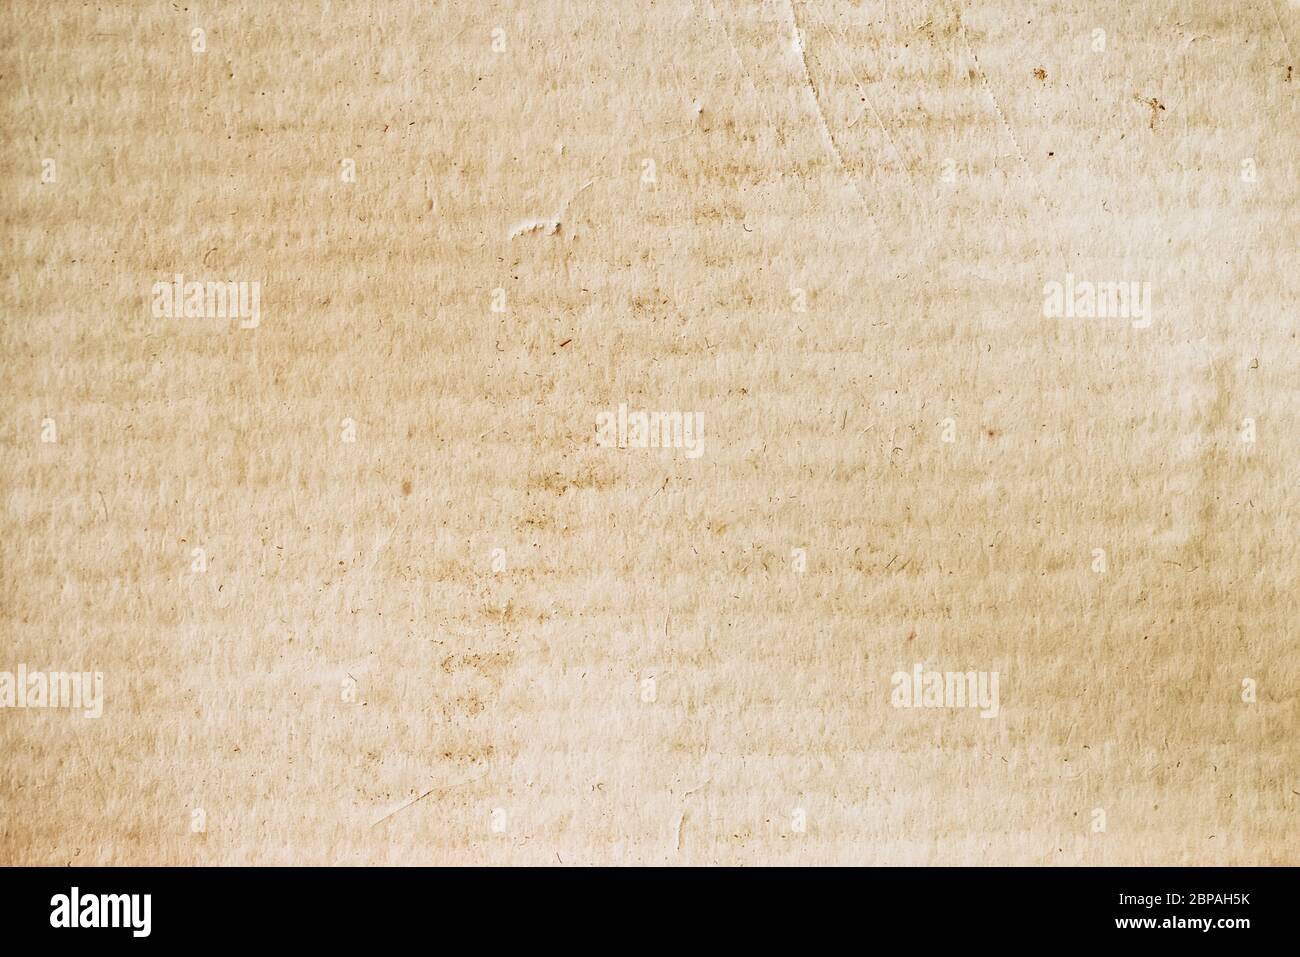 Texture du carton en bandes de chevratons avec diverses taches de saleté, taches, inclusions. Arrière-plan papier rugueux naturel Banque D'Images